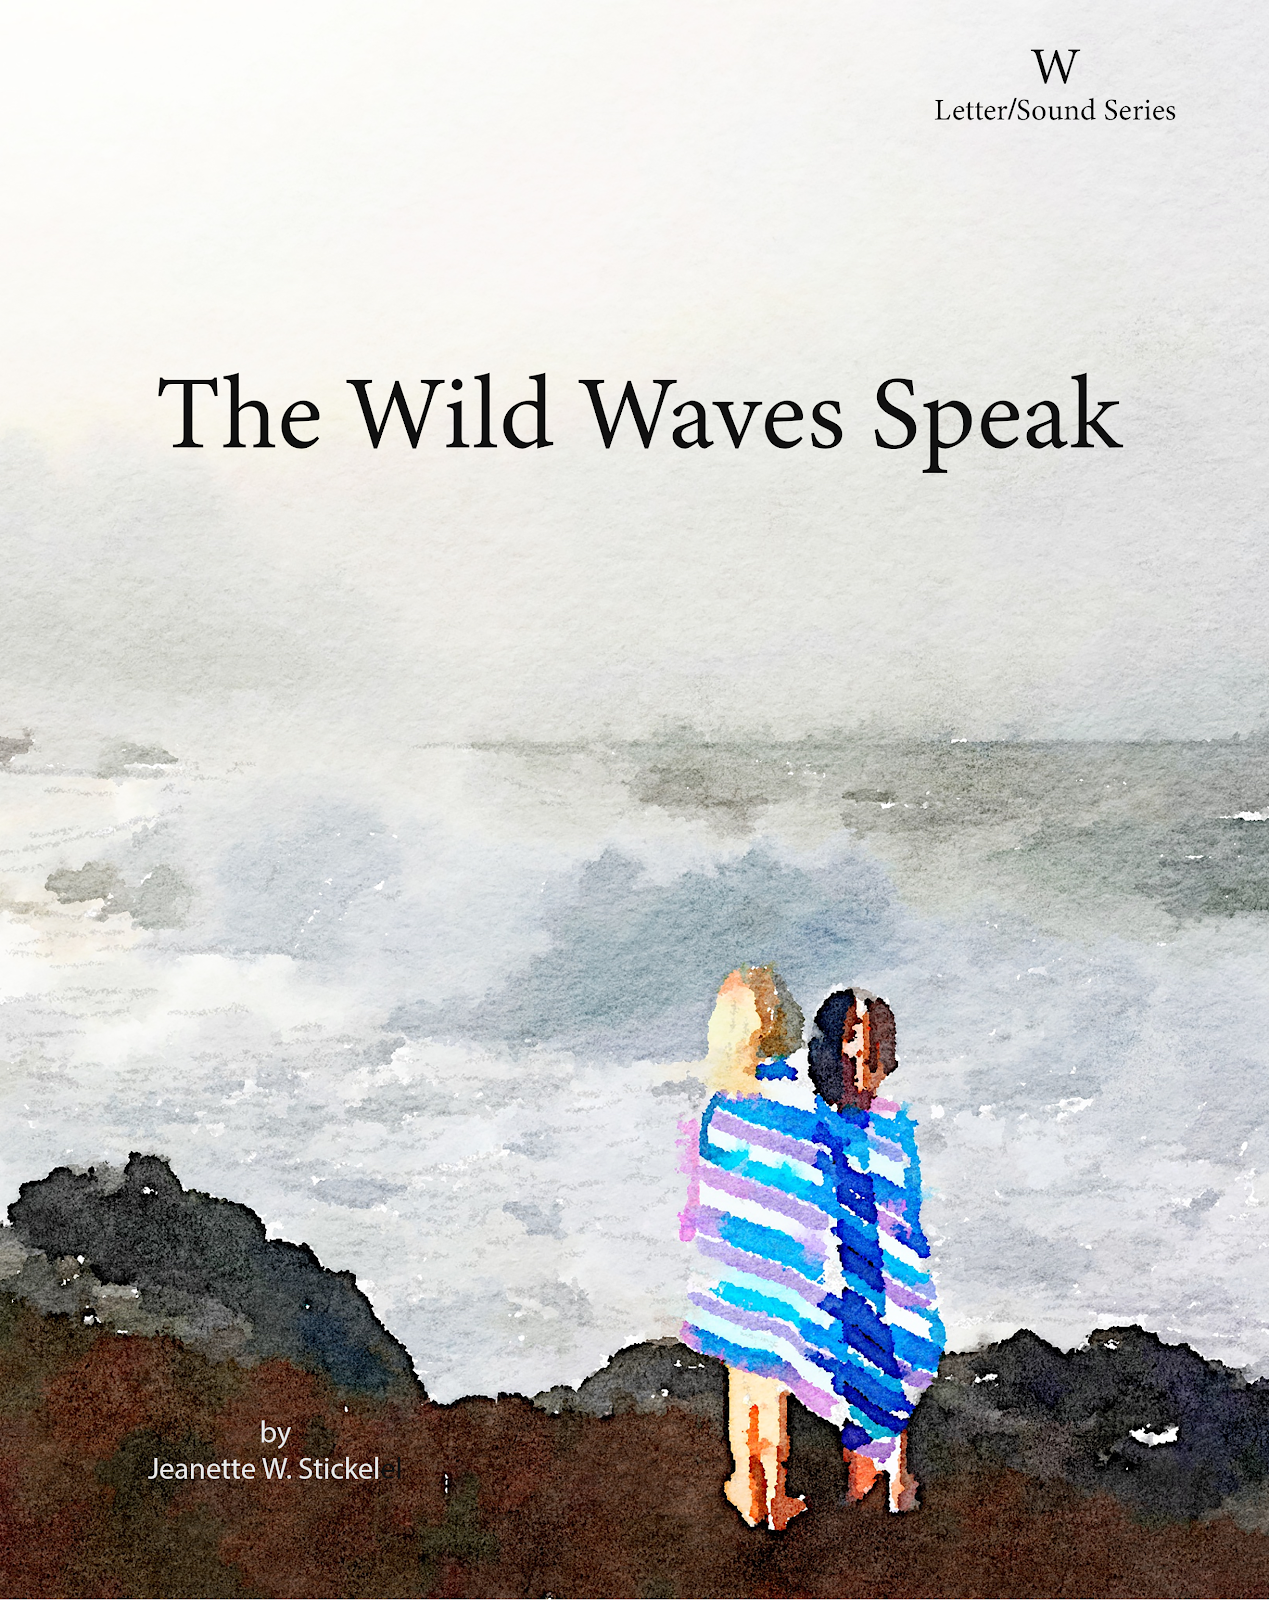 The Wild Waves Speak